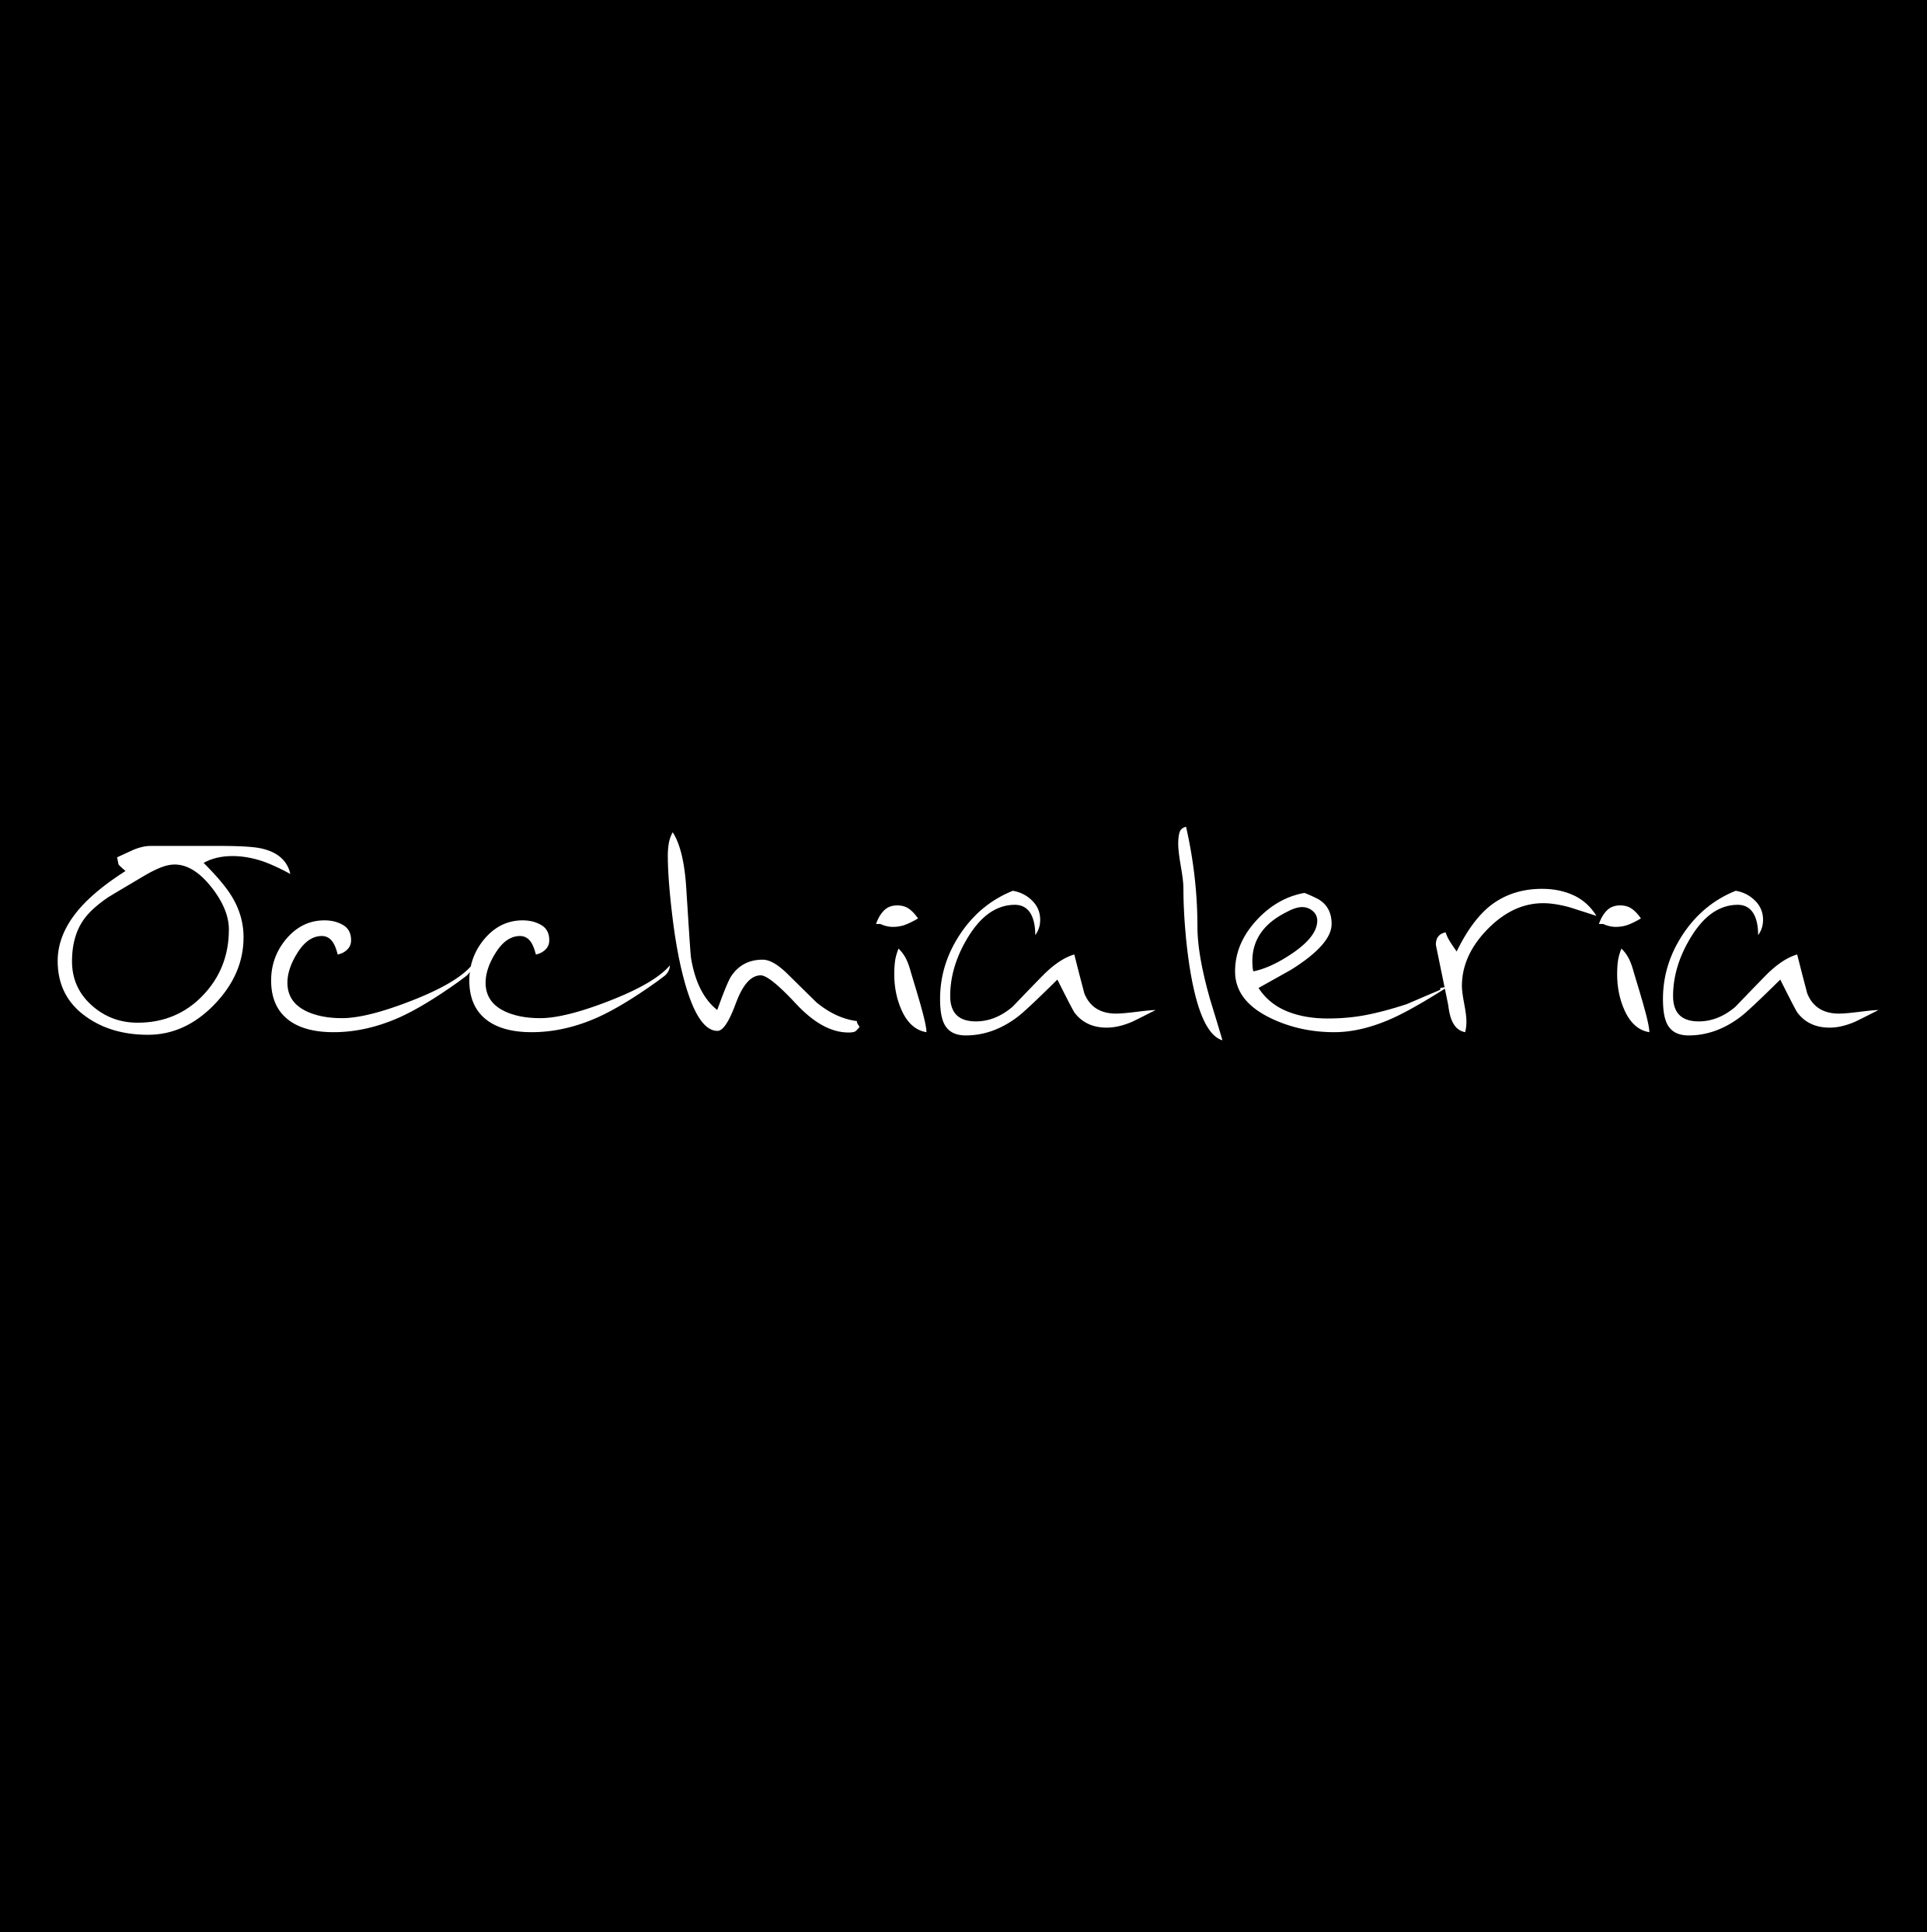 OCCHIALERIA